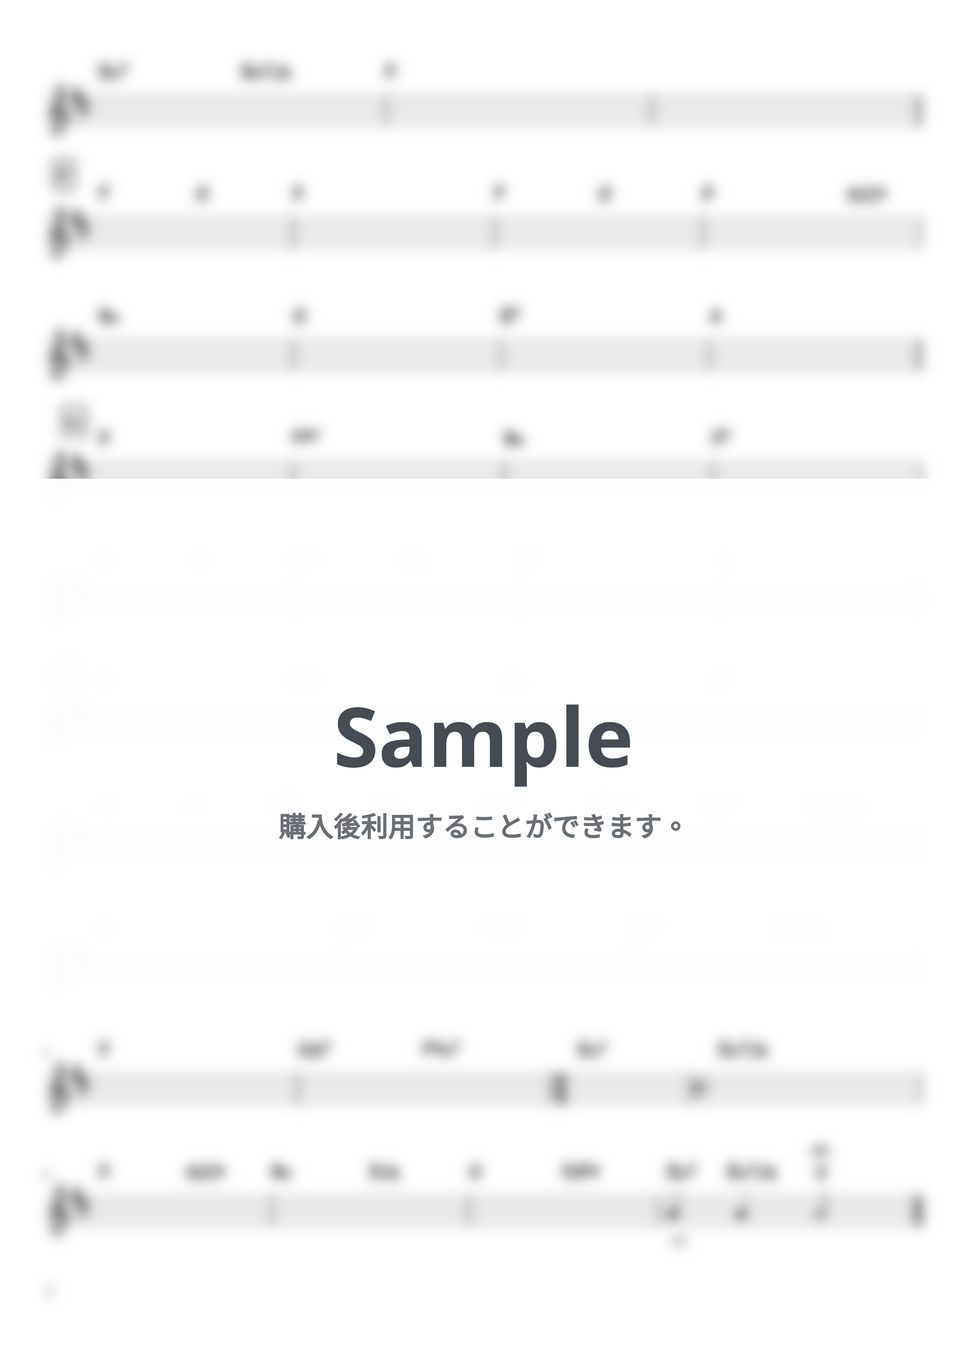 サザンオールスターズ - TSUNAMI (バンド用コード譜) by 箱譜屋